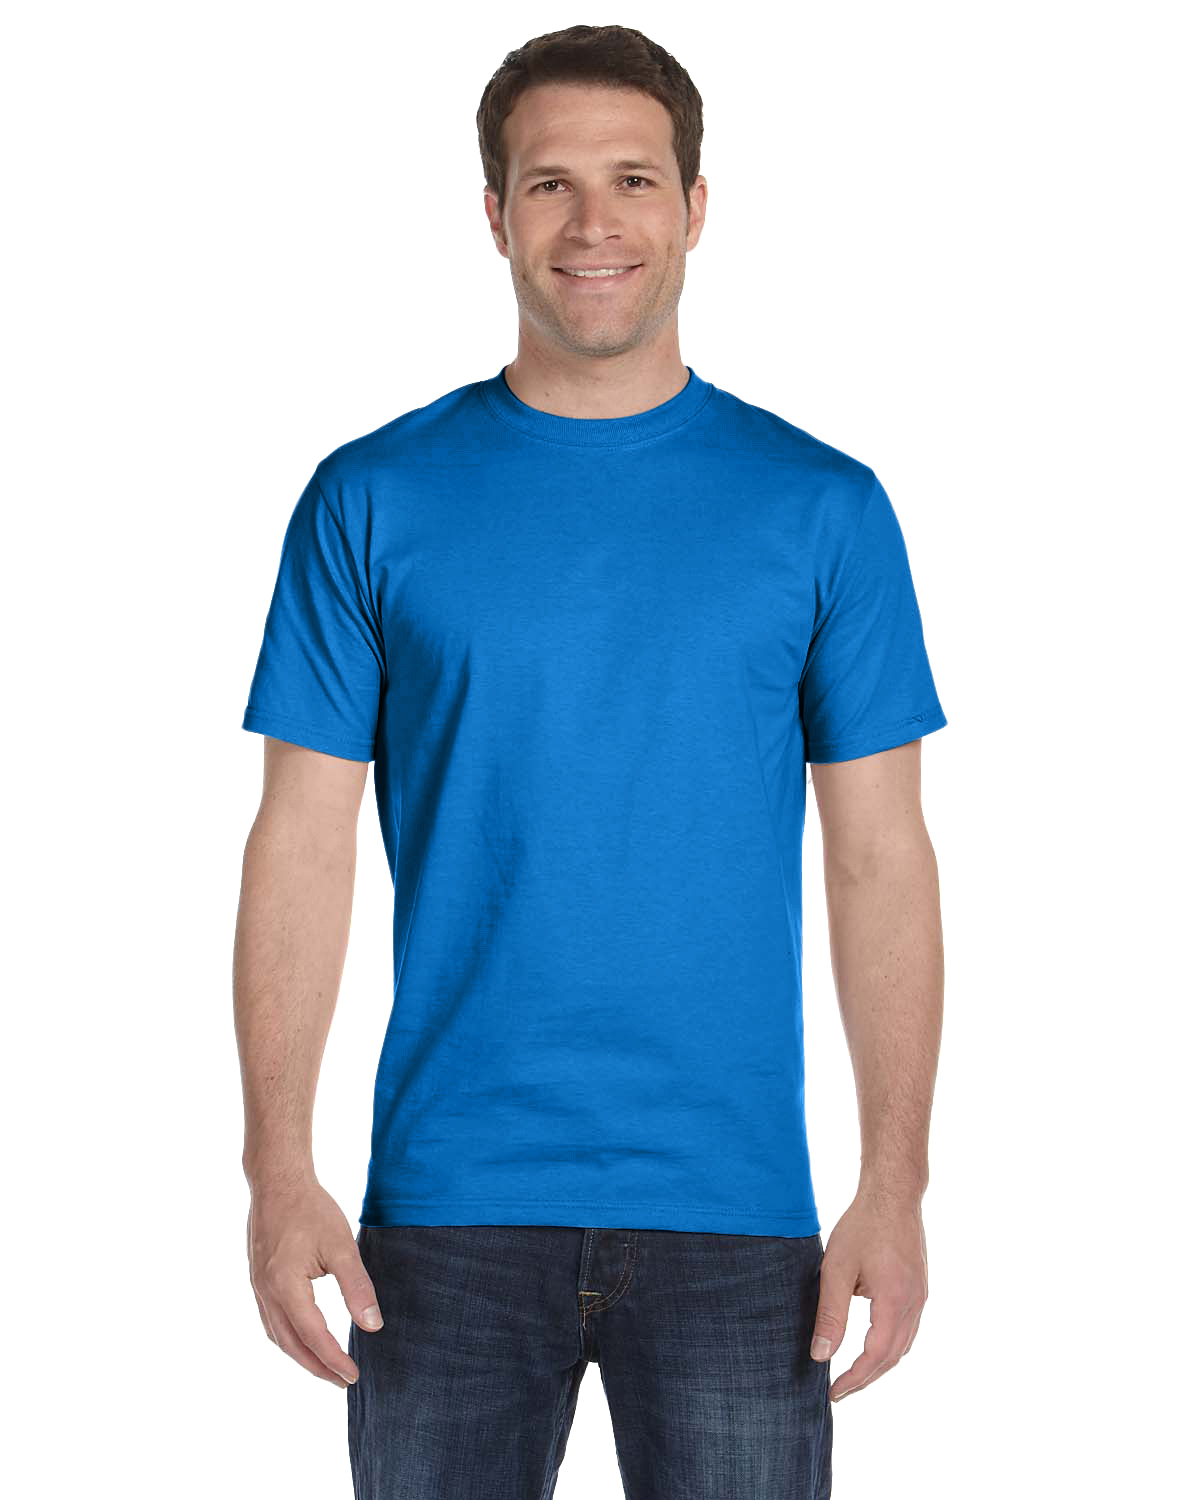 blue dri fit shirt